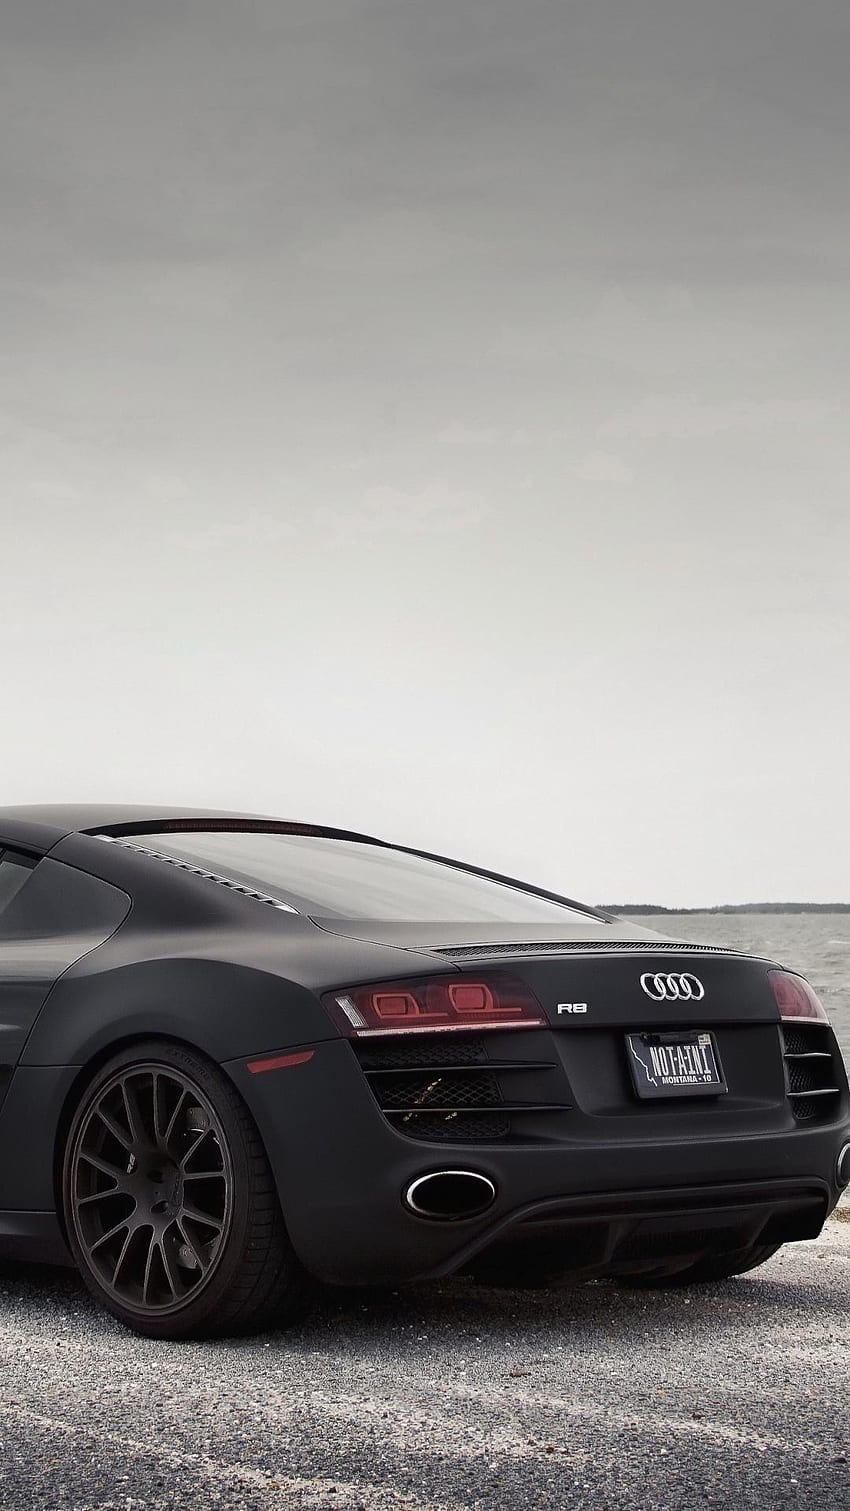 Audi r8 mobil hitam pemandangan laut, Audi R8 iPhone wallpaper ponsel HD